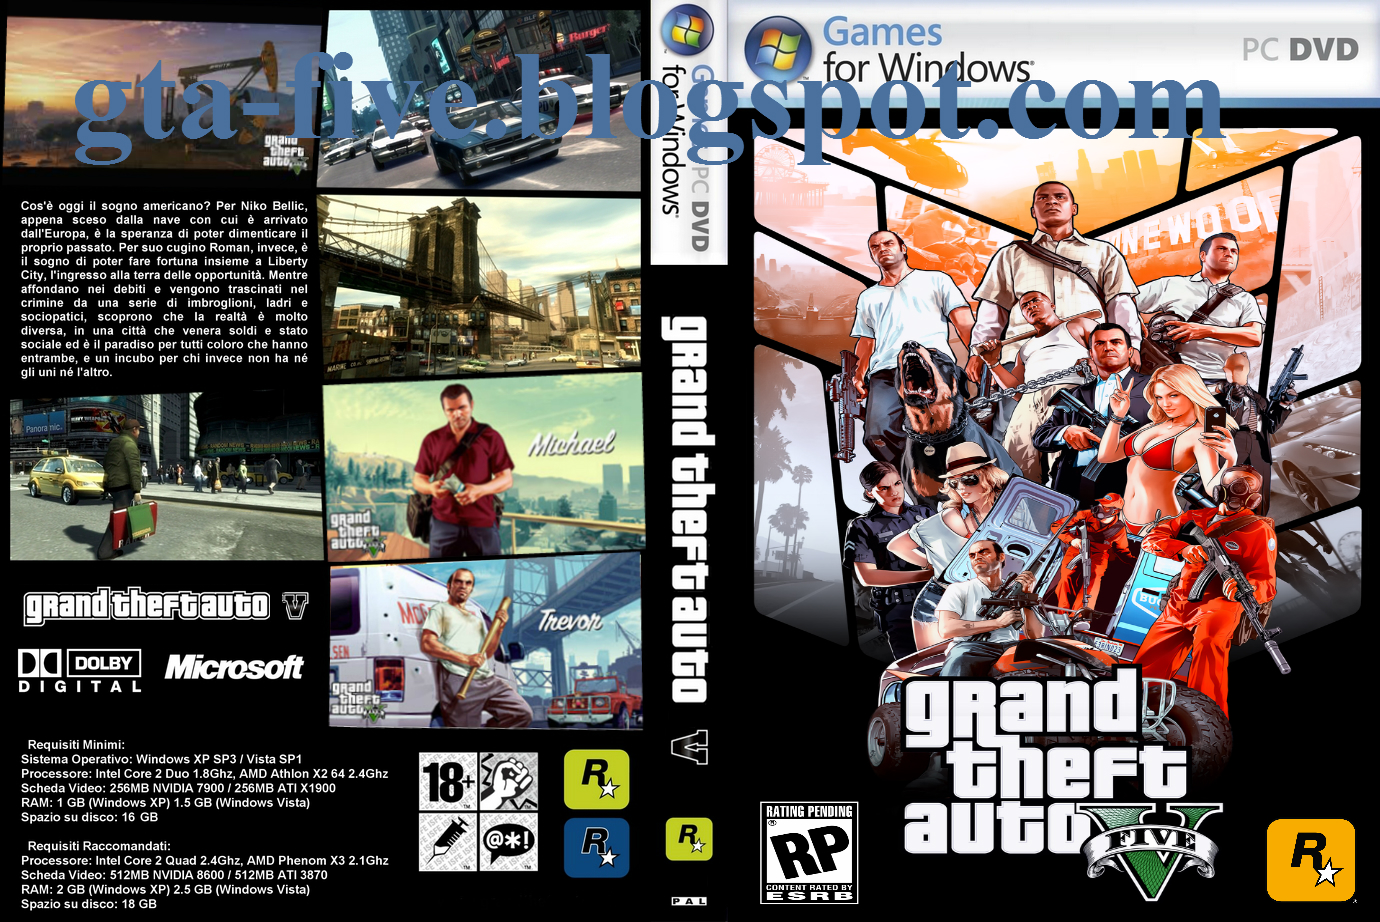 Download GTA 5 Full Version